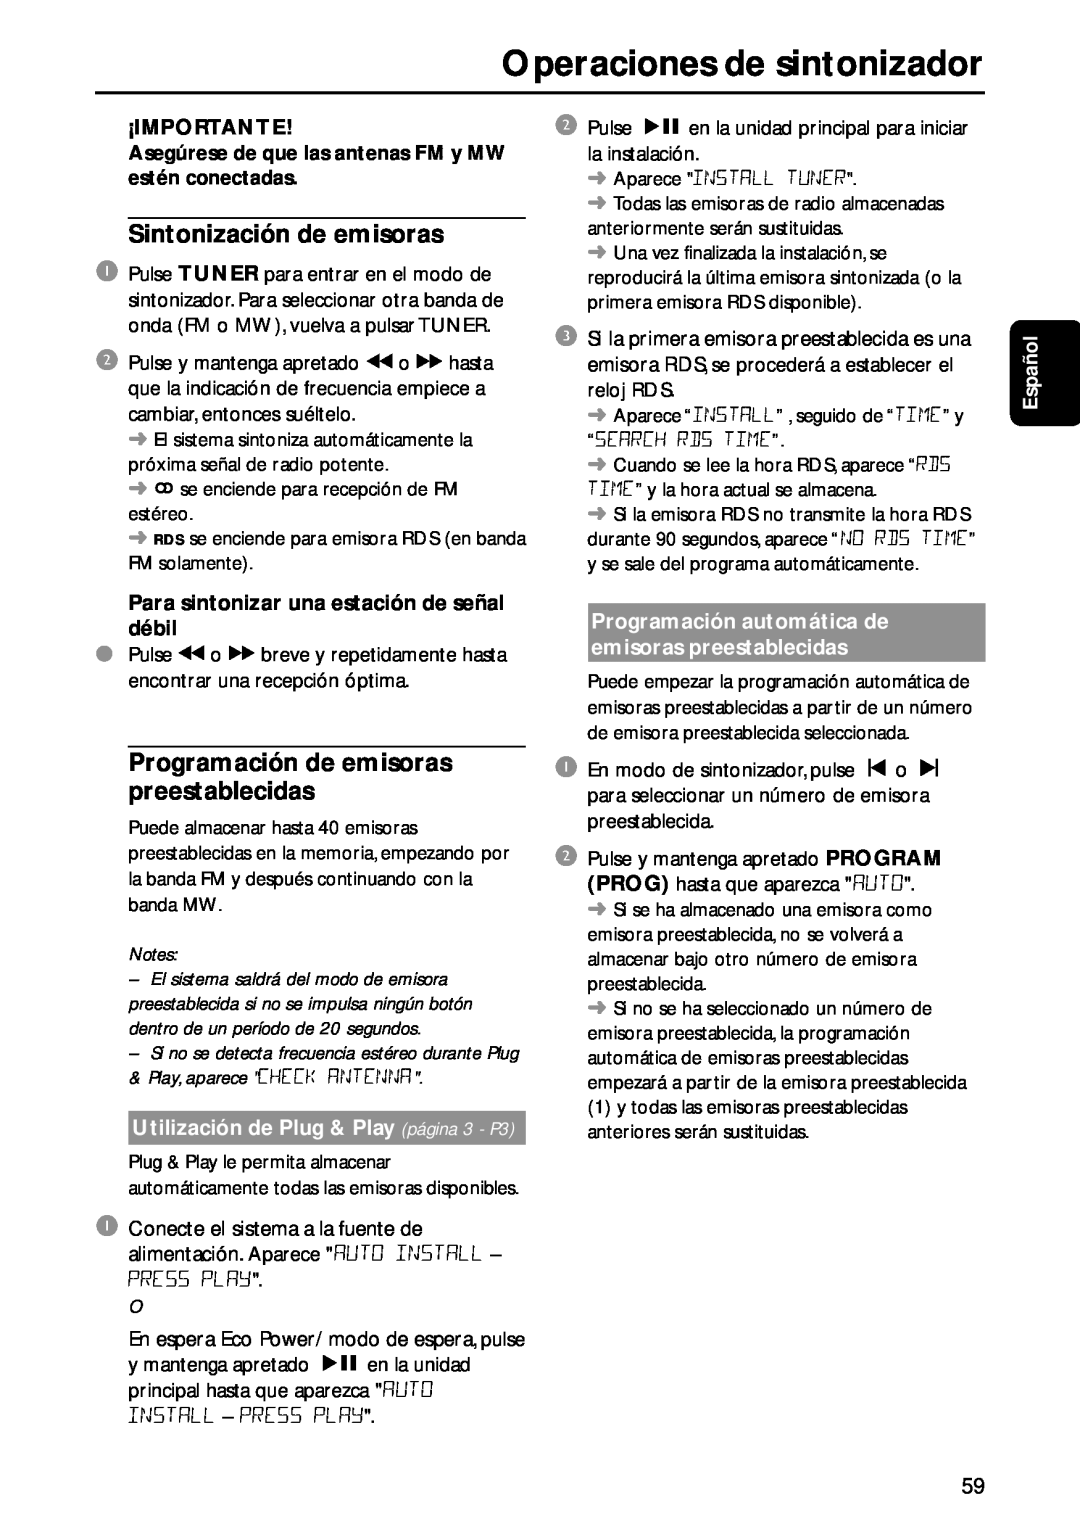 Philips MC-M570 manual Operaciones de sintonizador, ¡Importante, Español, Para sintonizar una estación de señal débil 